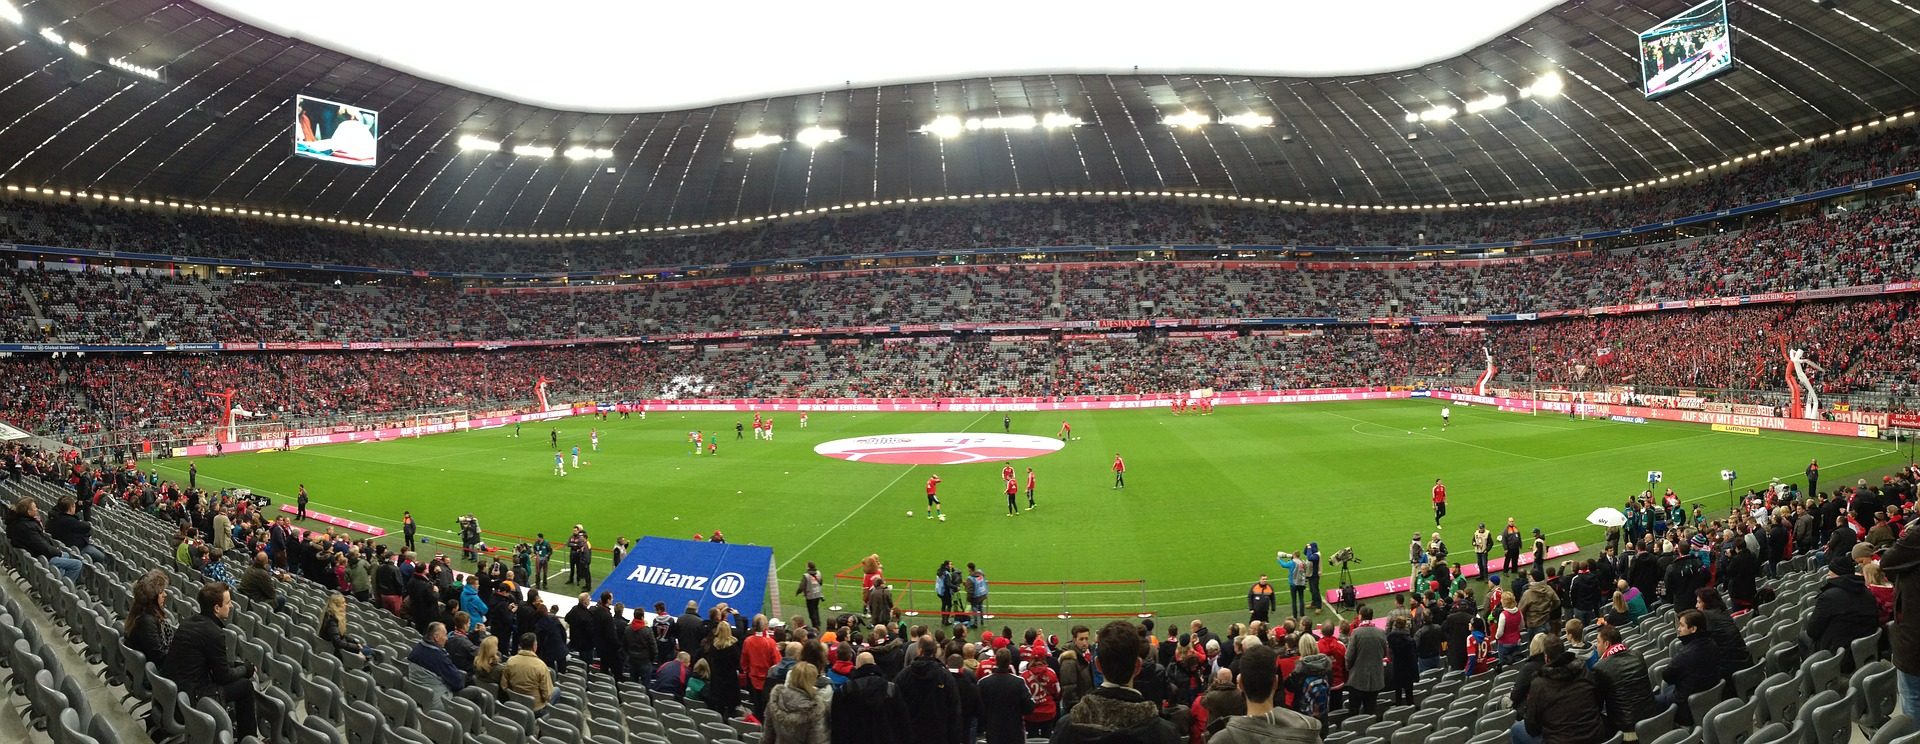 FC Bayern München Tickets Bsp. vs Fortuna Düsseldorf 24.11.19 ab 199,00€ +Hotel Titel